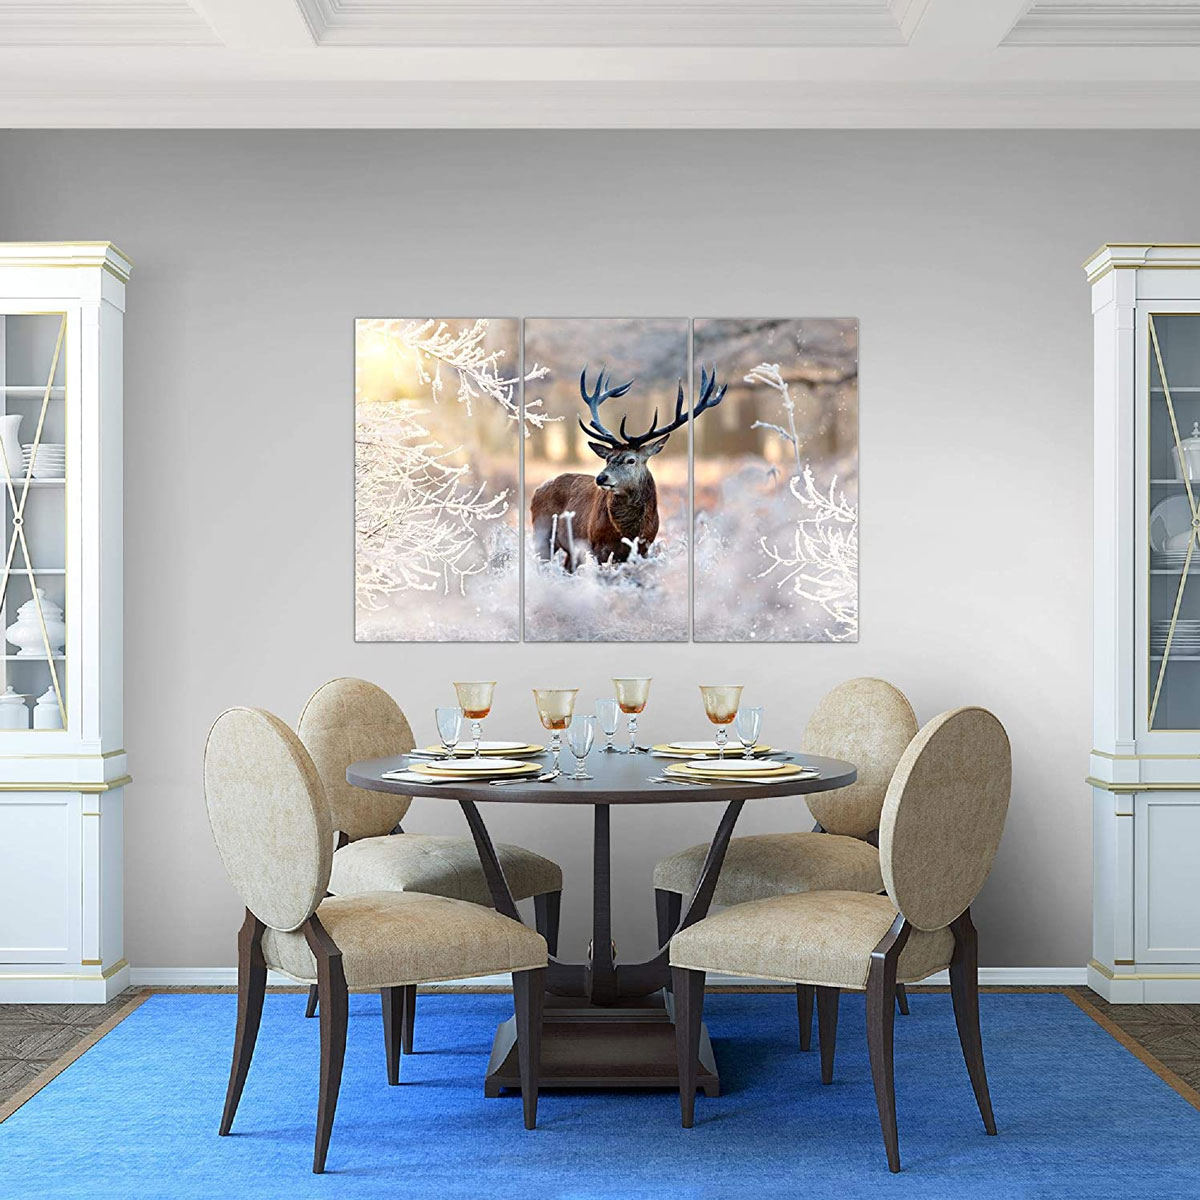 Quadro in sala da pranzo con cervo in un paesaggio invernale.